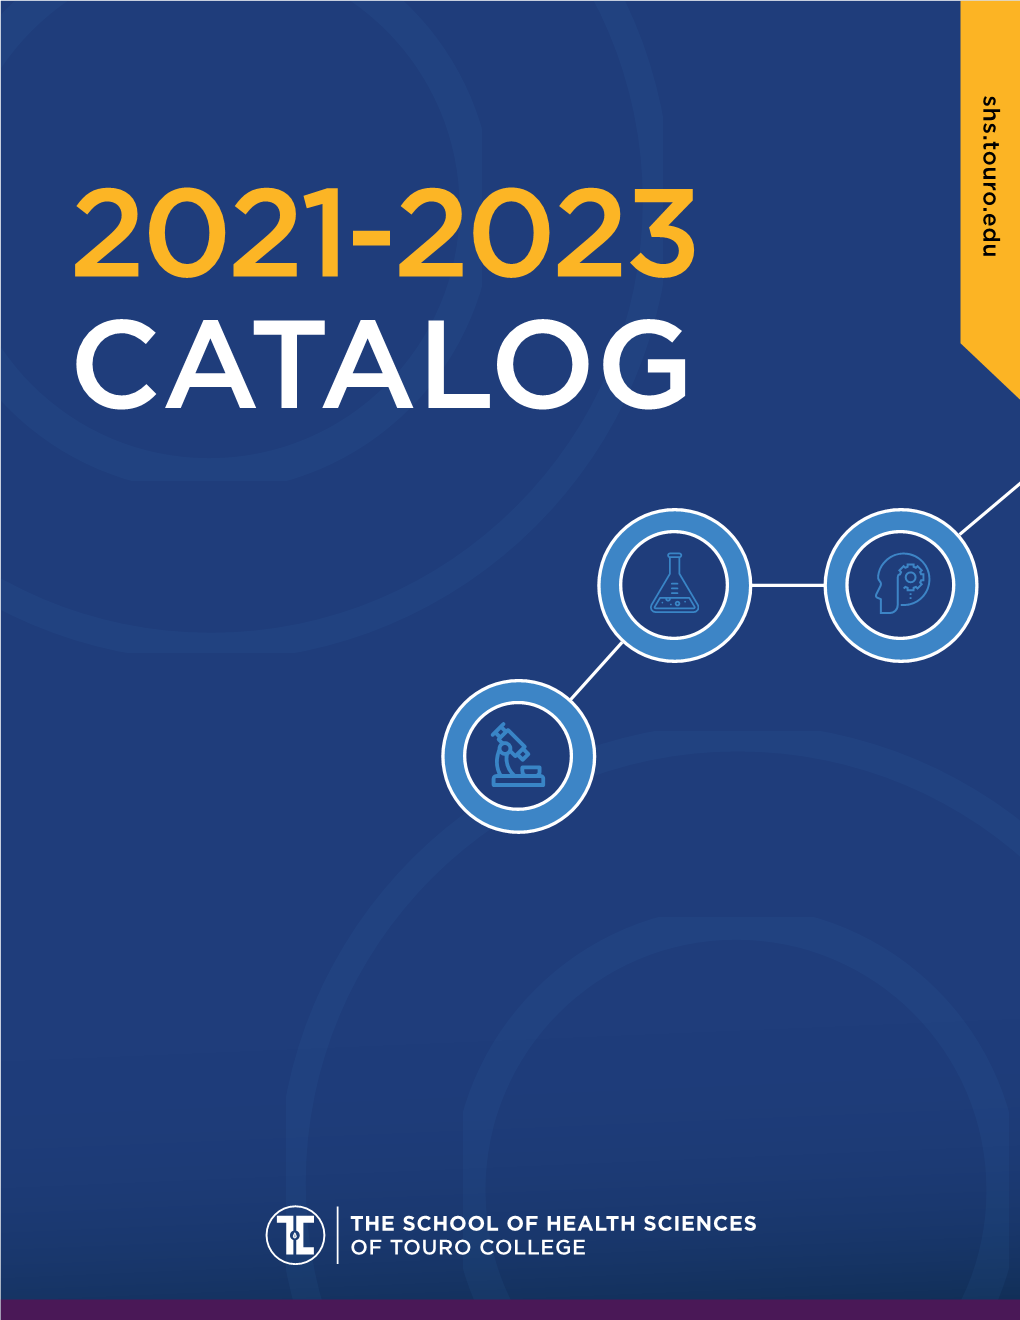 SHS Catalog 2021-2023